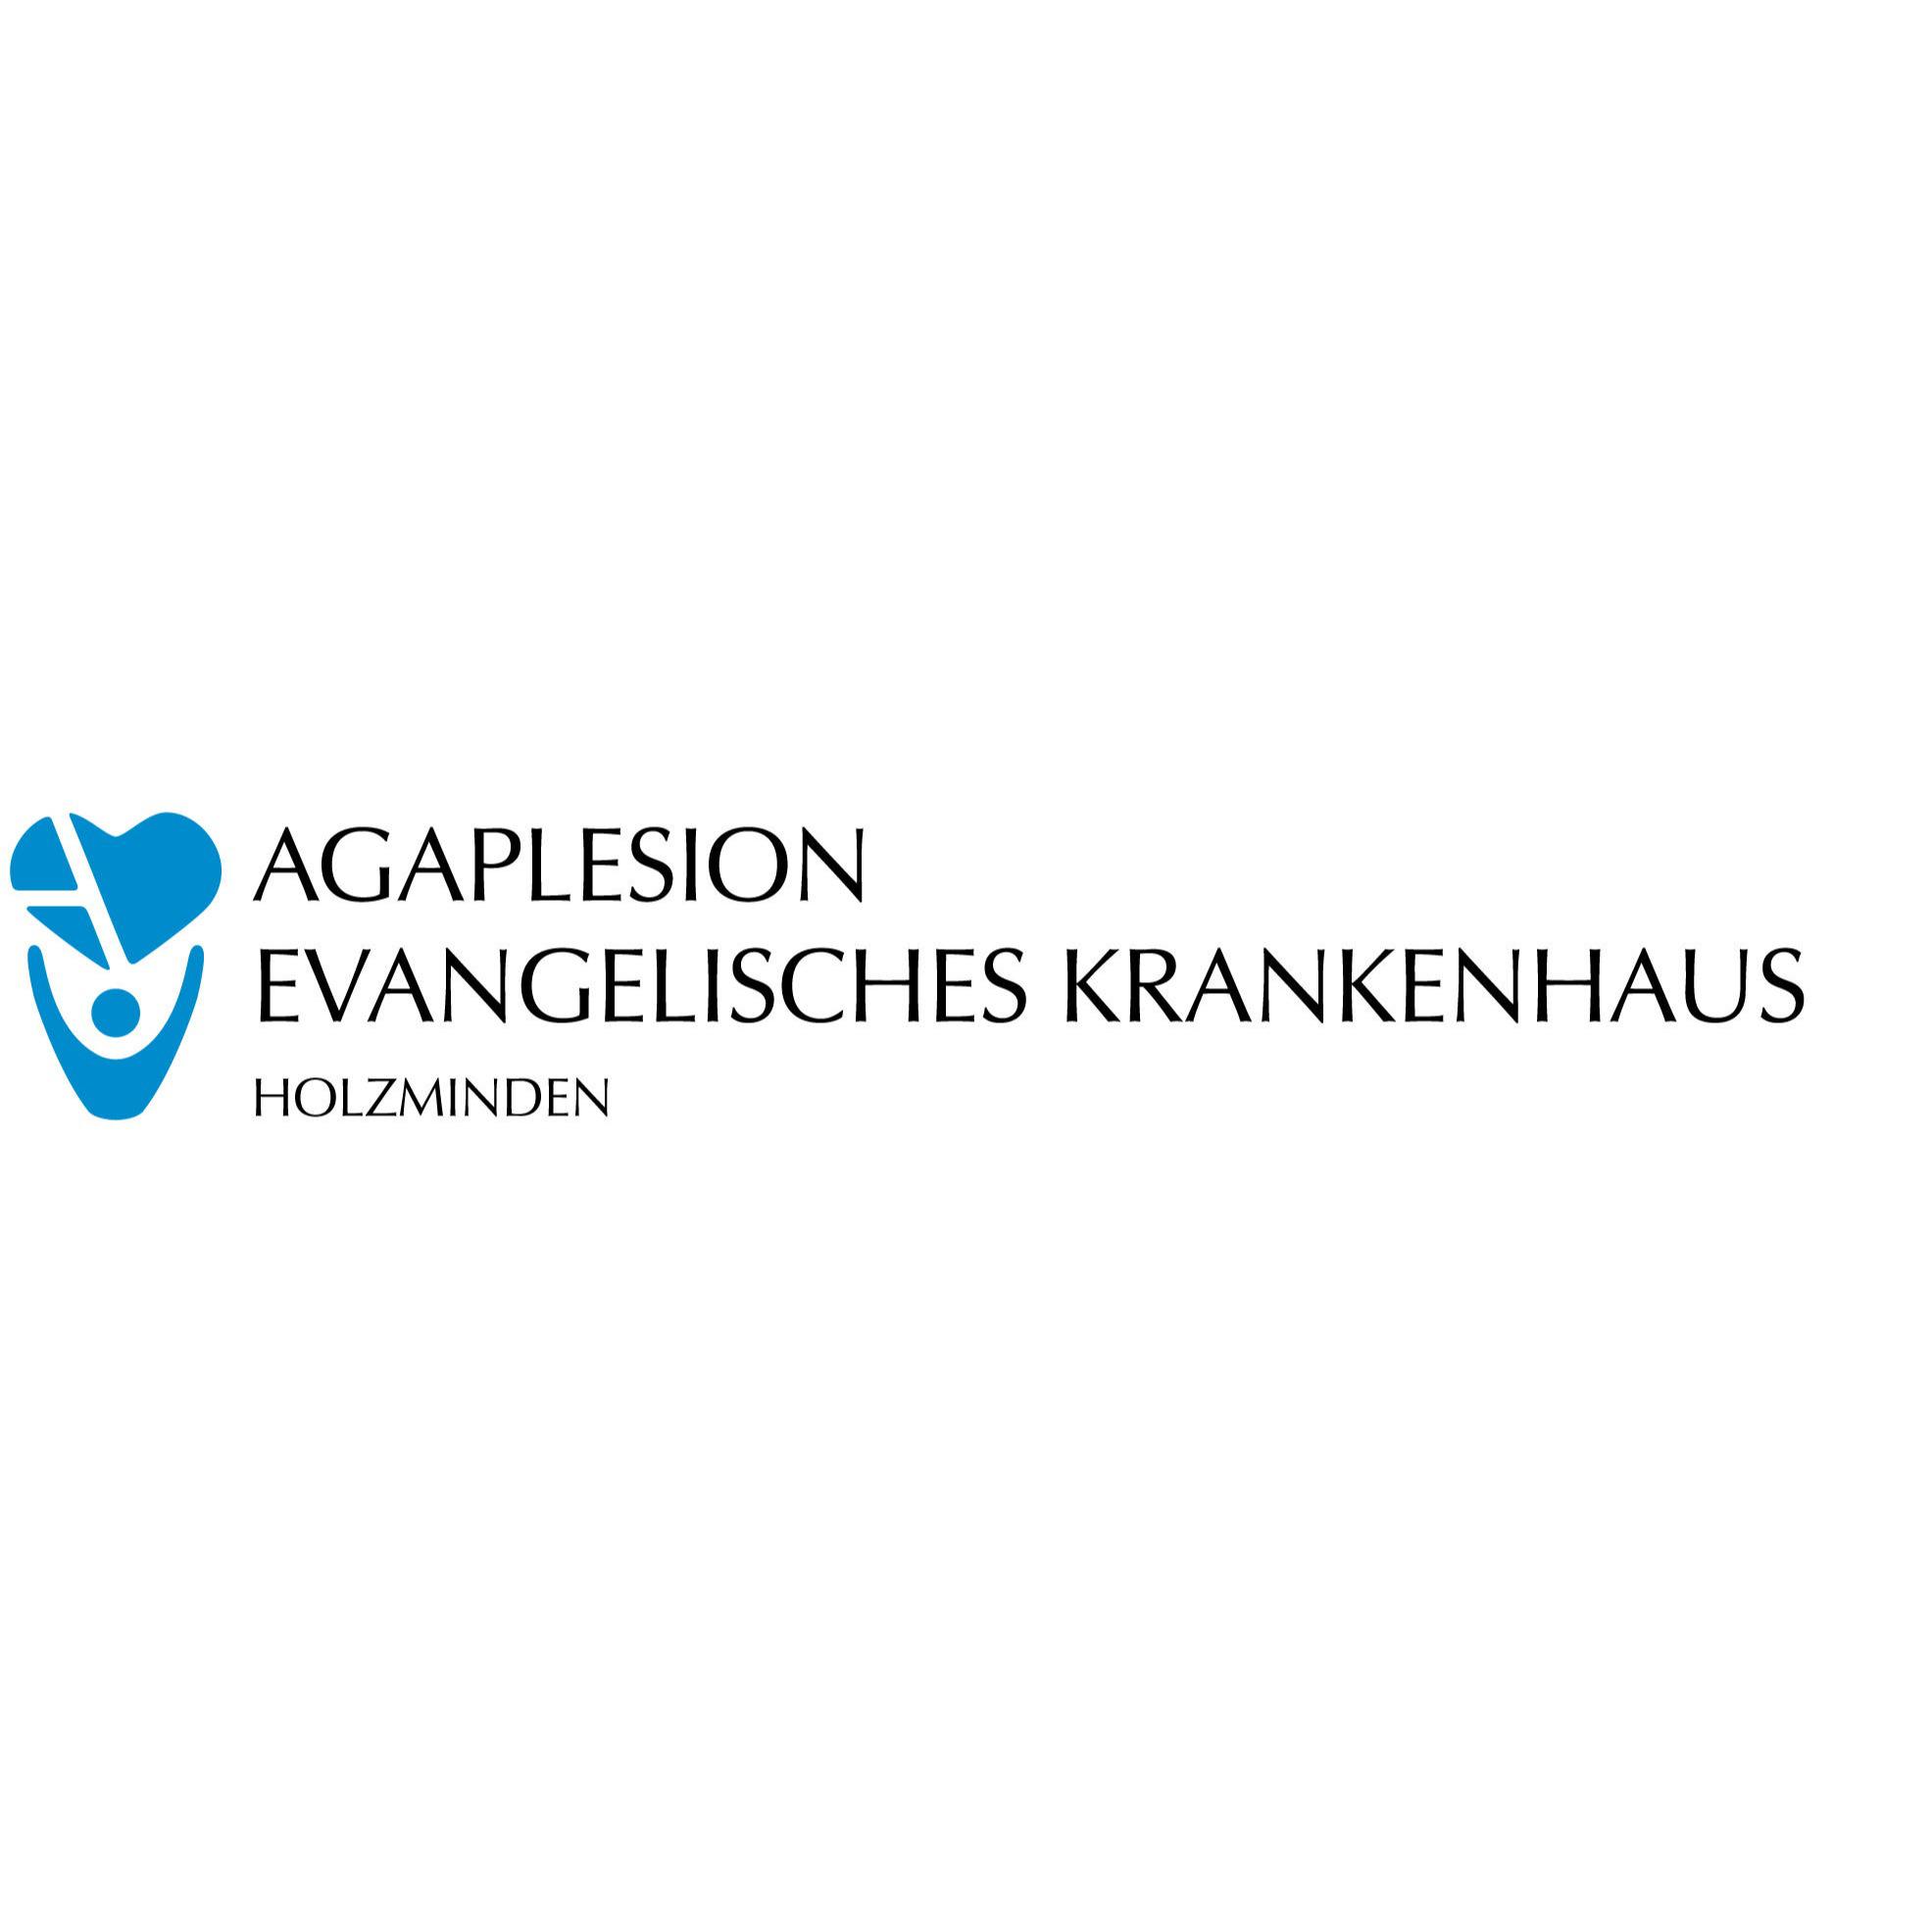 Kardiologie am AGAPLESION EVANGELISCHES KRANKENHAUS HOLZMINDEN in Holzminden - Logo